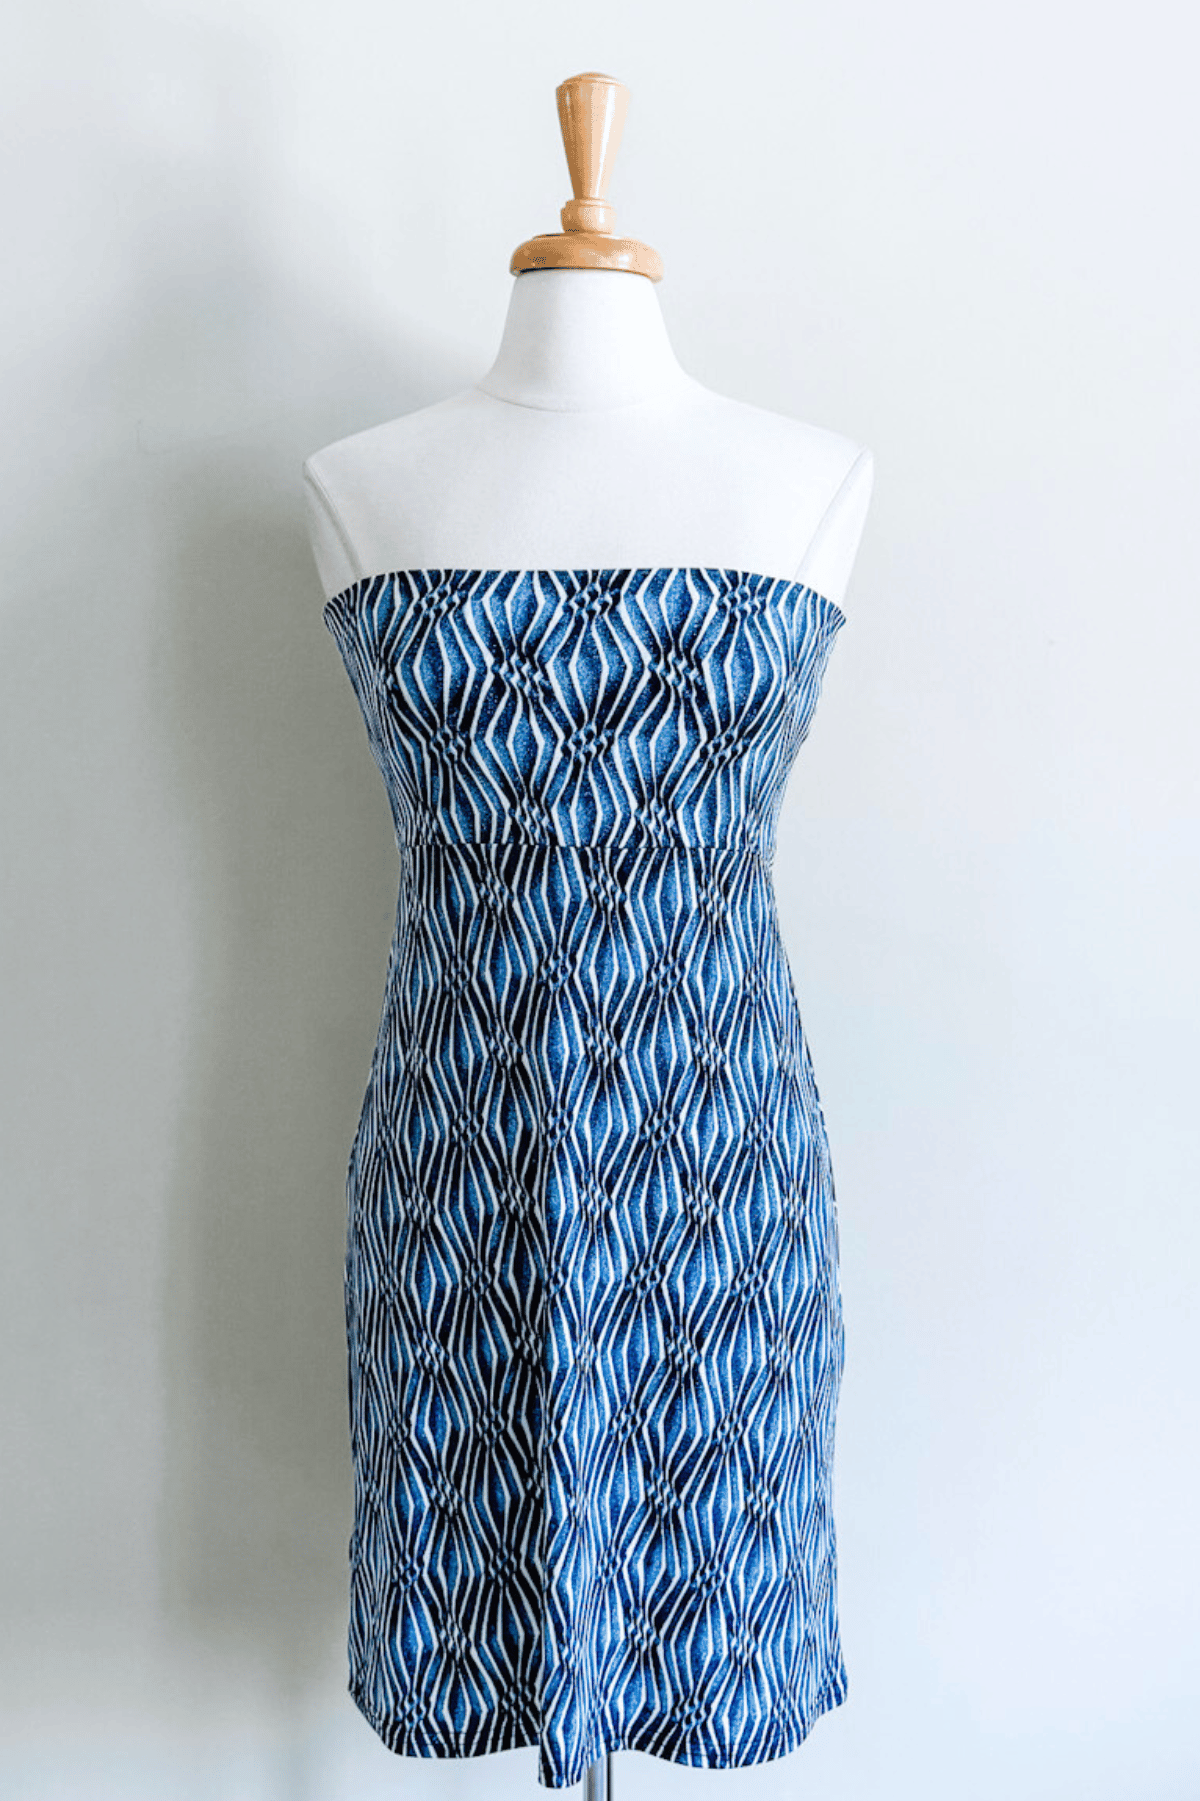 Slip Skirt in Blue Ikat Print